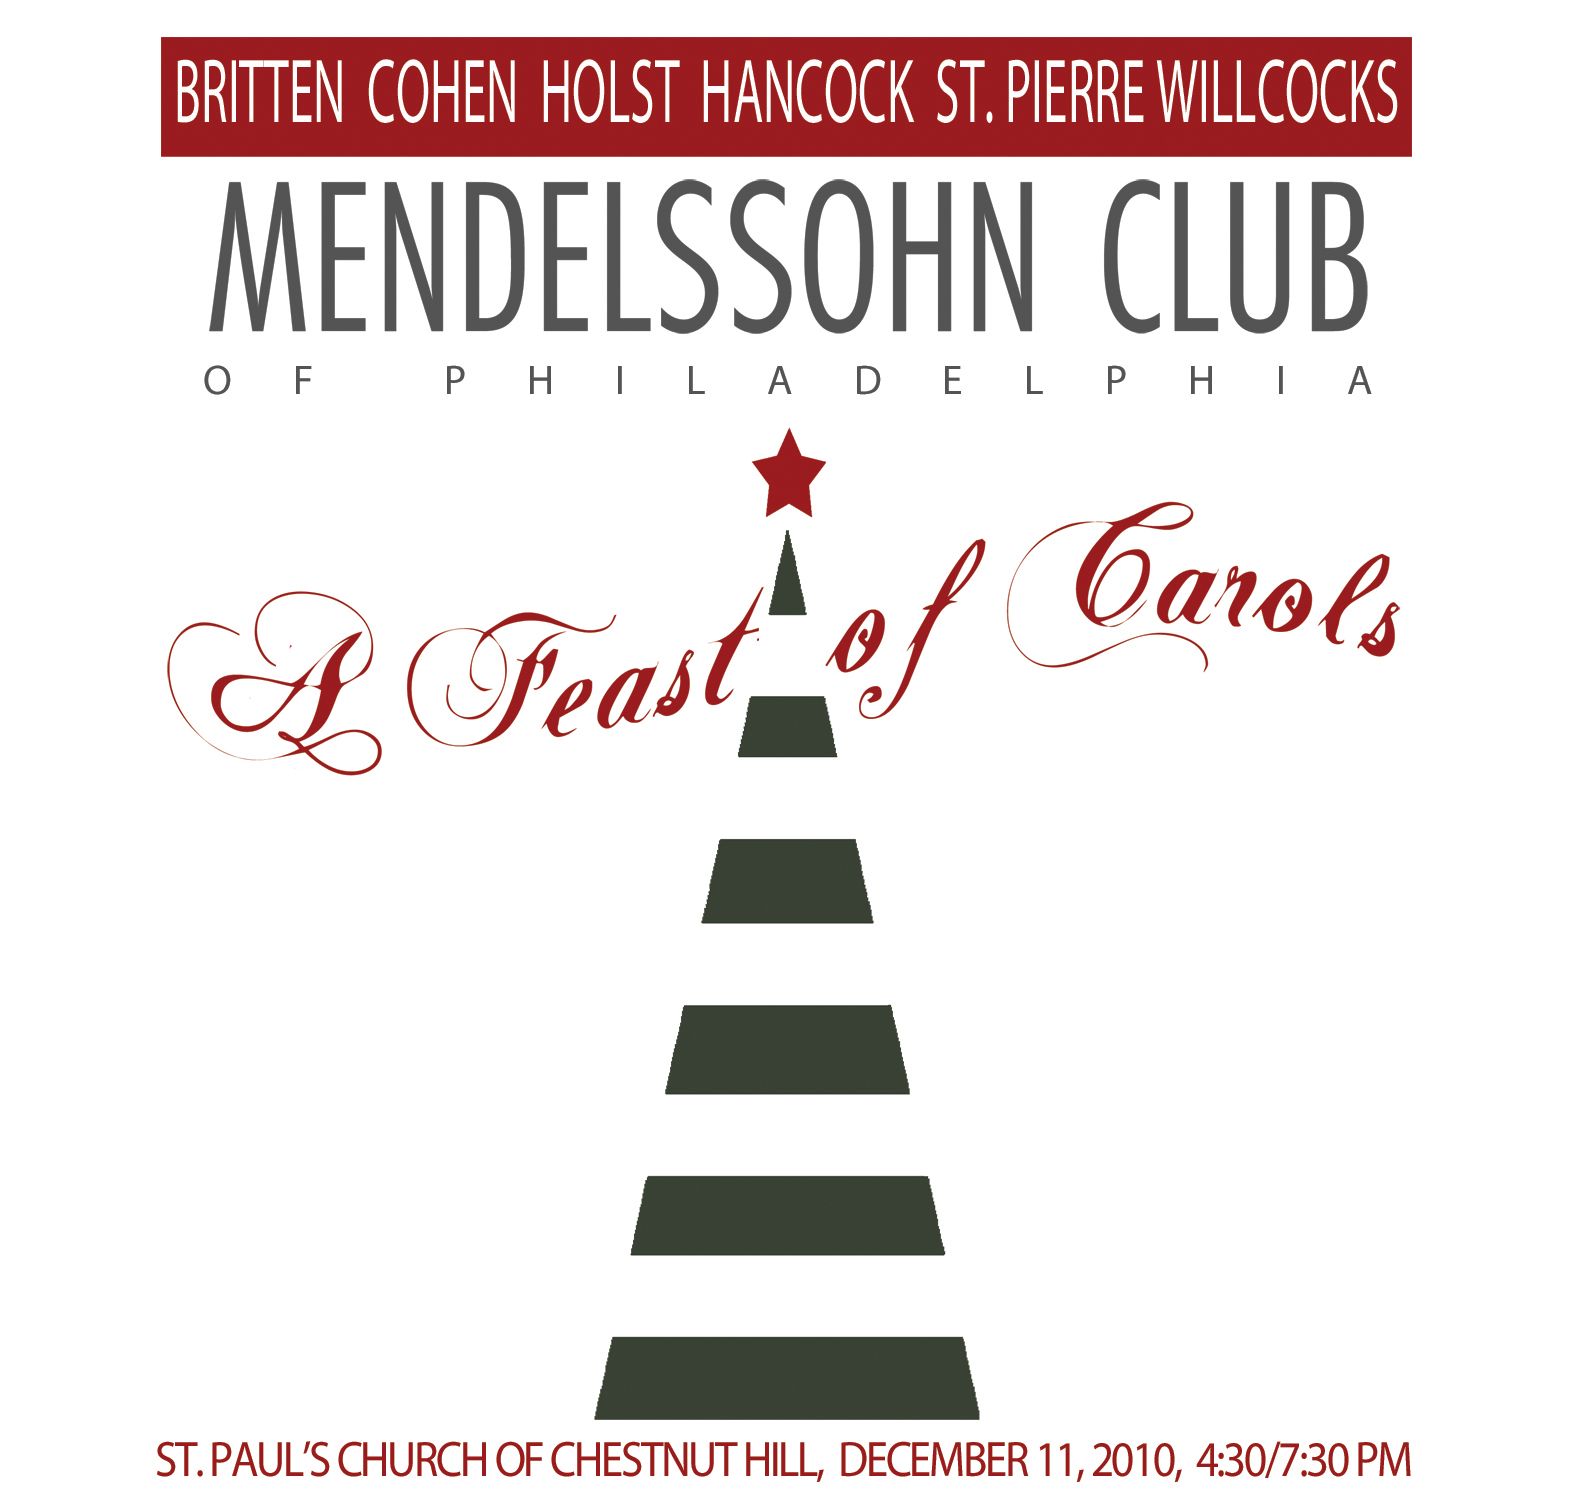 A poster for the mendelssohn club of philadelphia